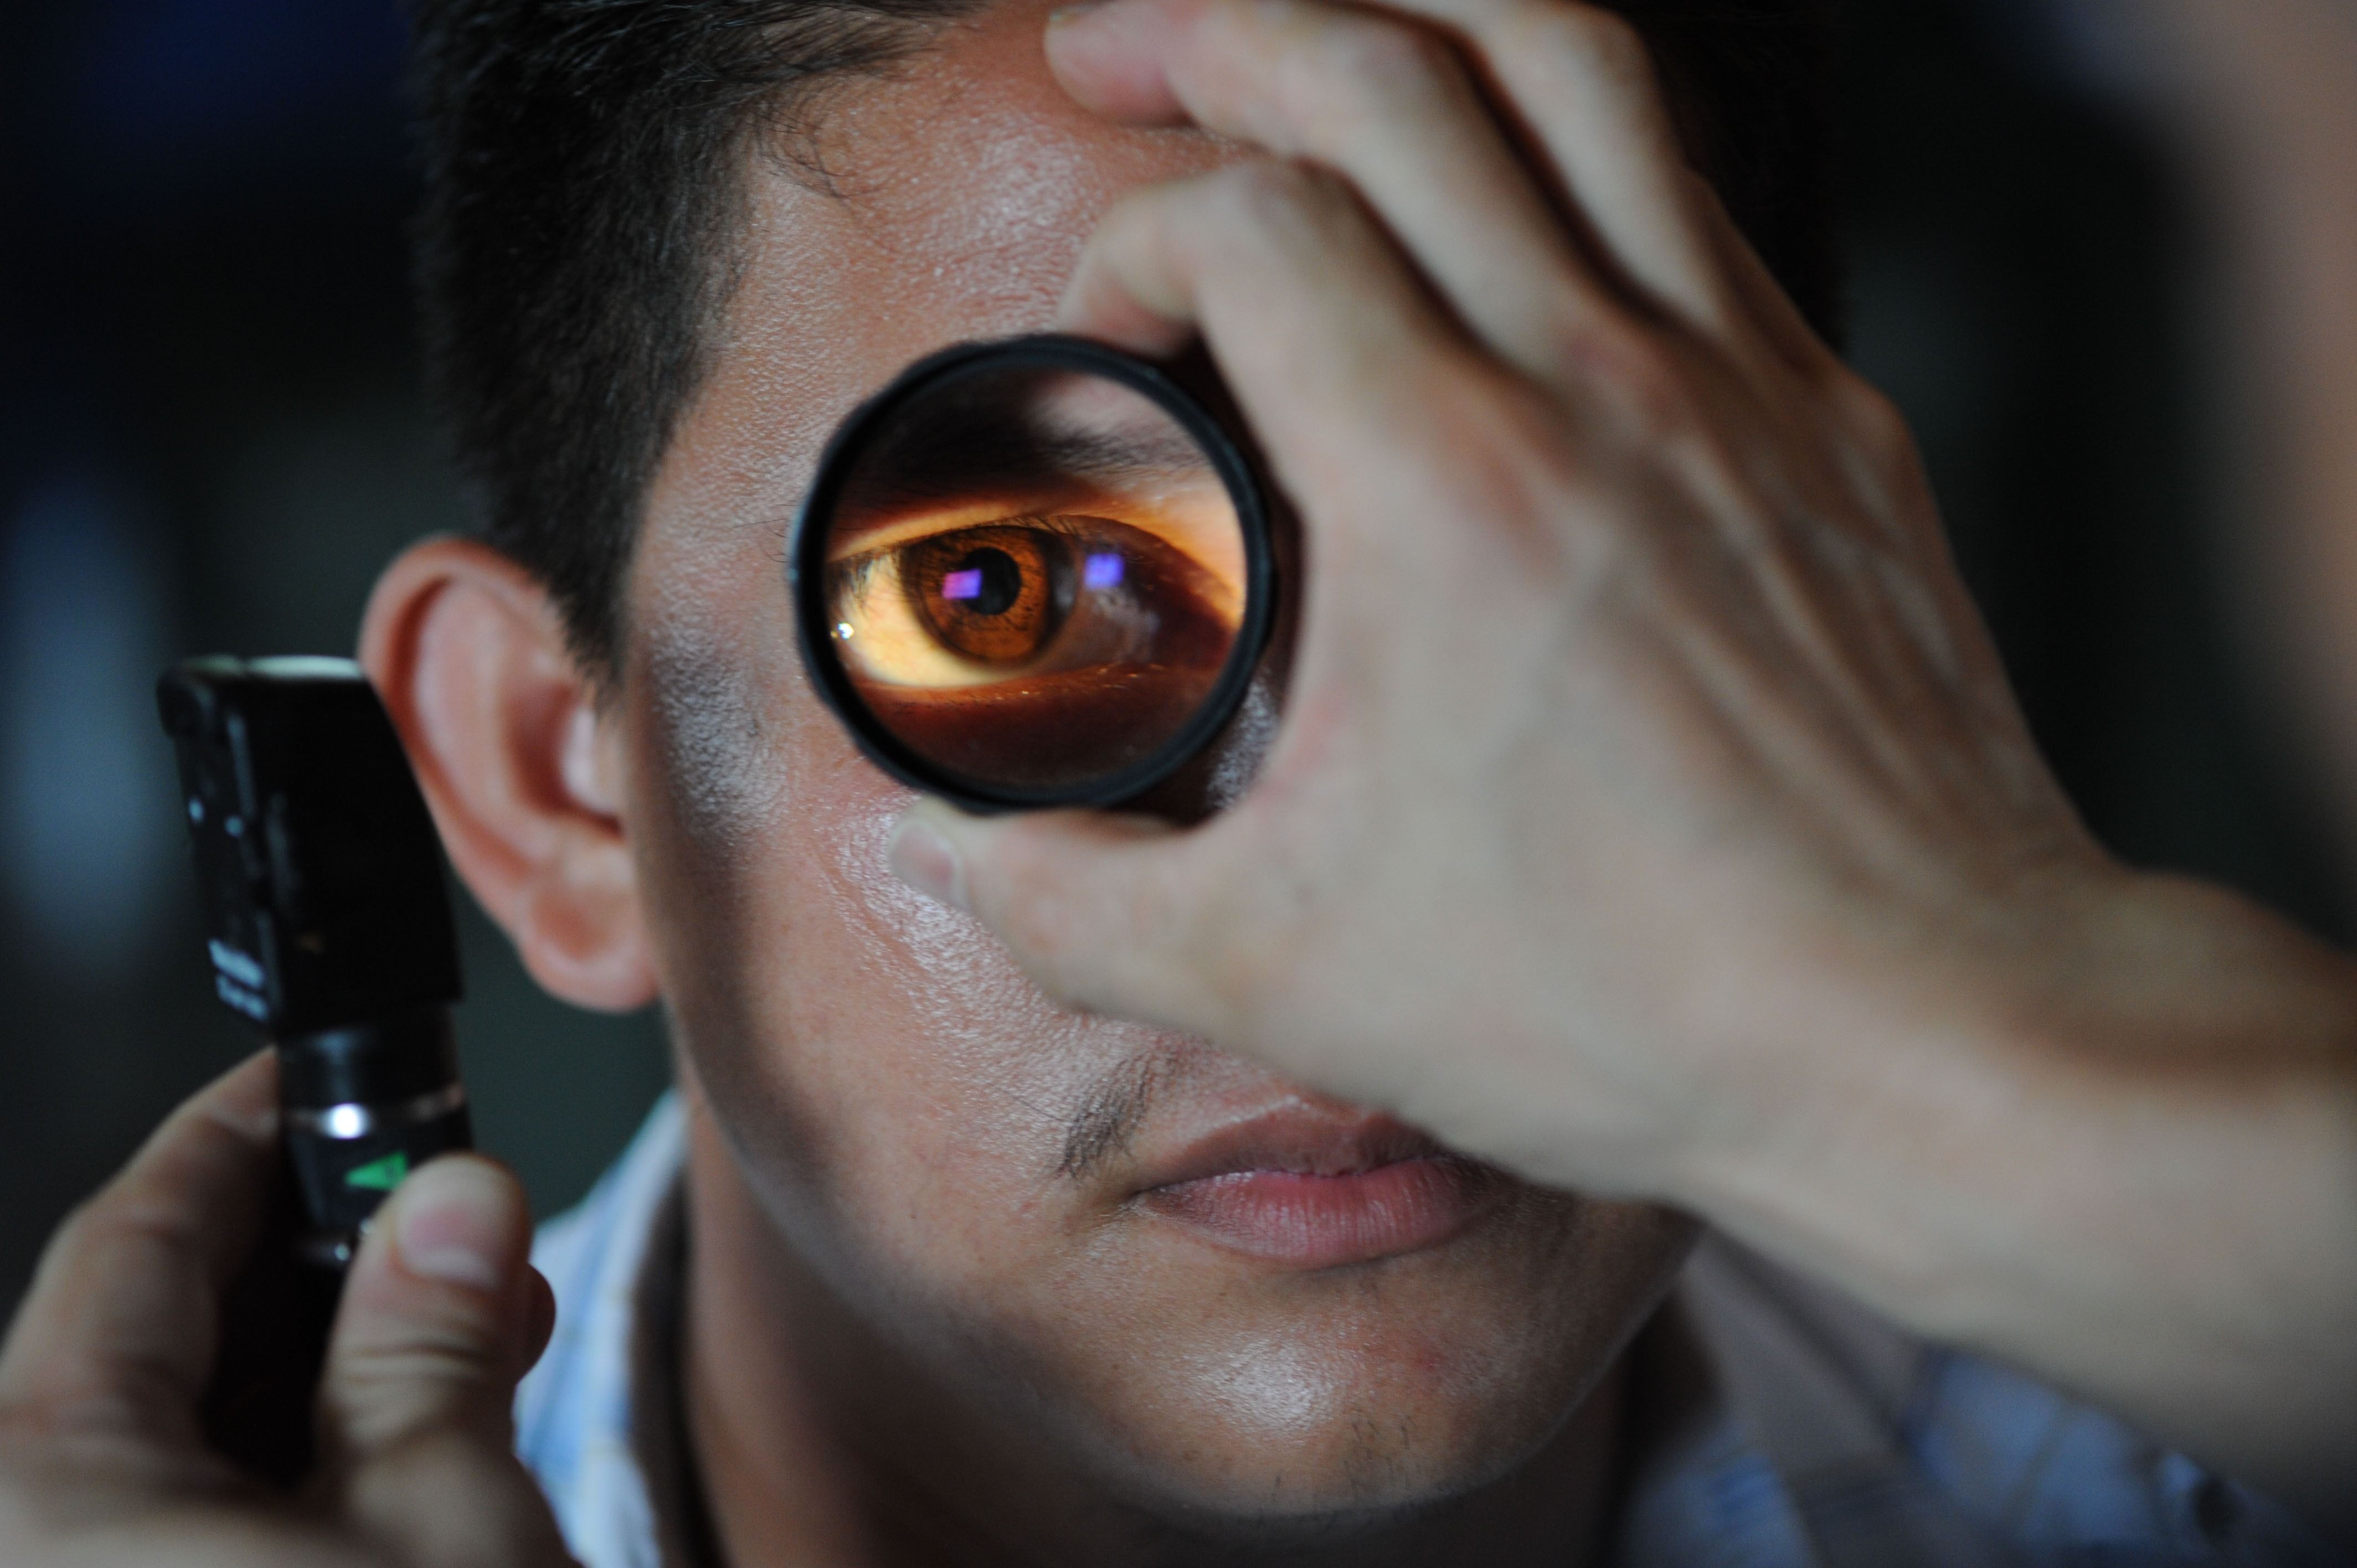 Pārskats par labākajām Ņižņijnovgorodas oftalmoloģijas klīnikām 2020. gadā